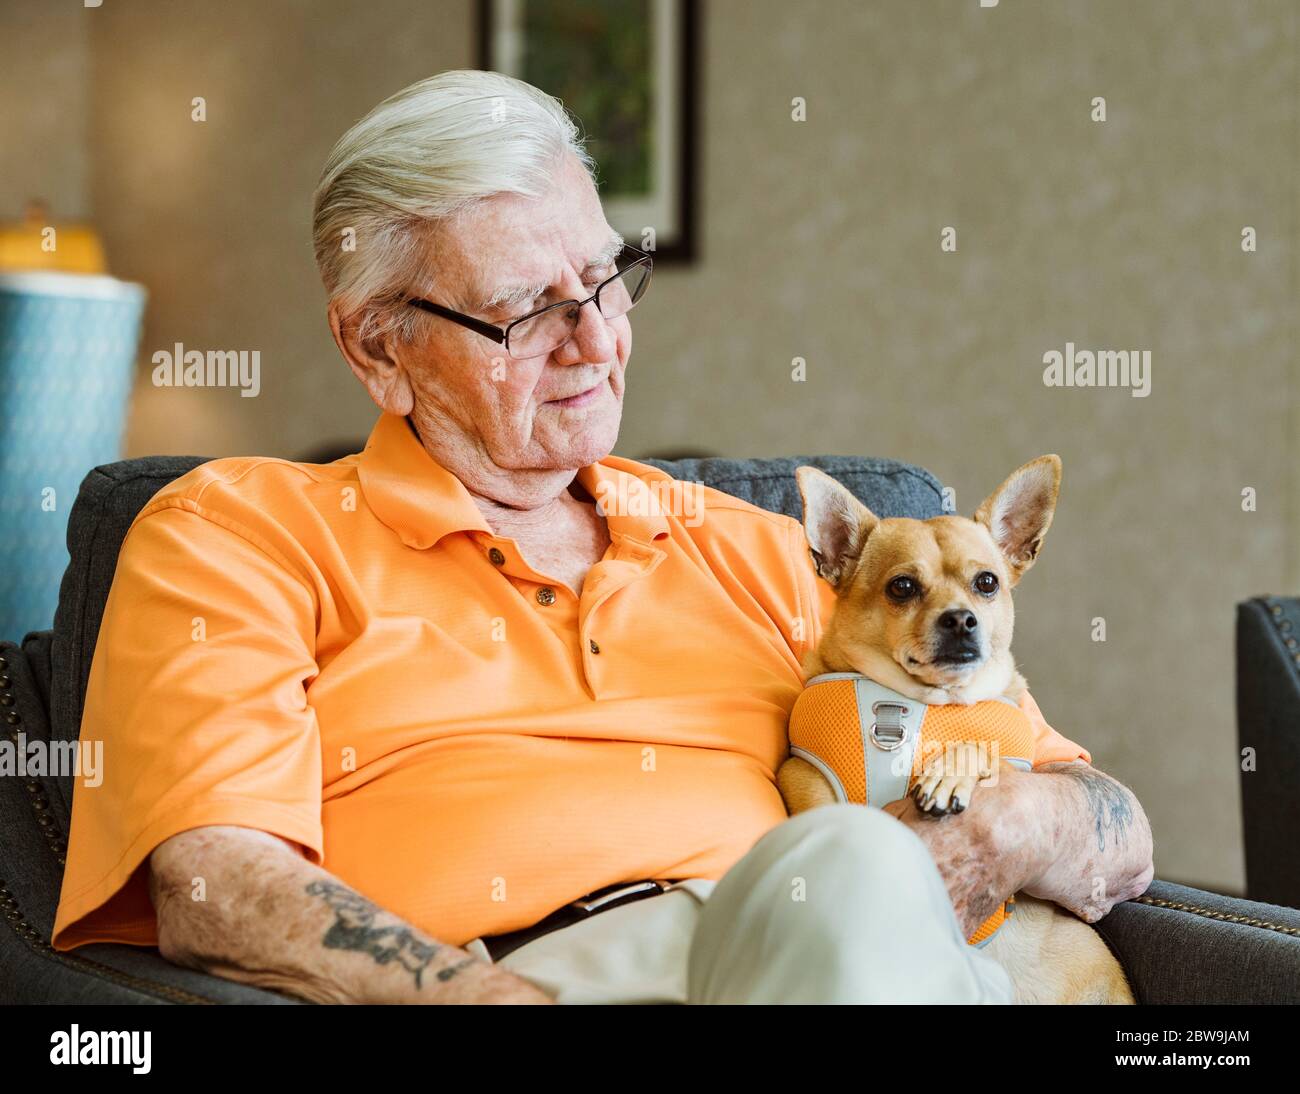 Senior man holding service dog Stock Photo